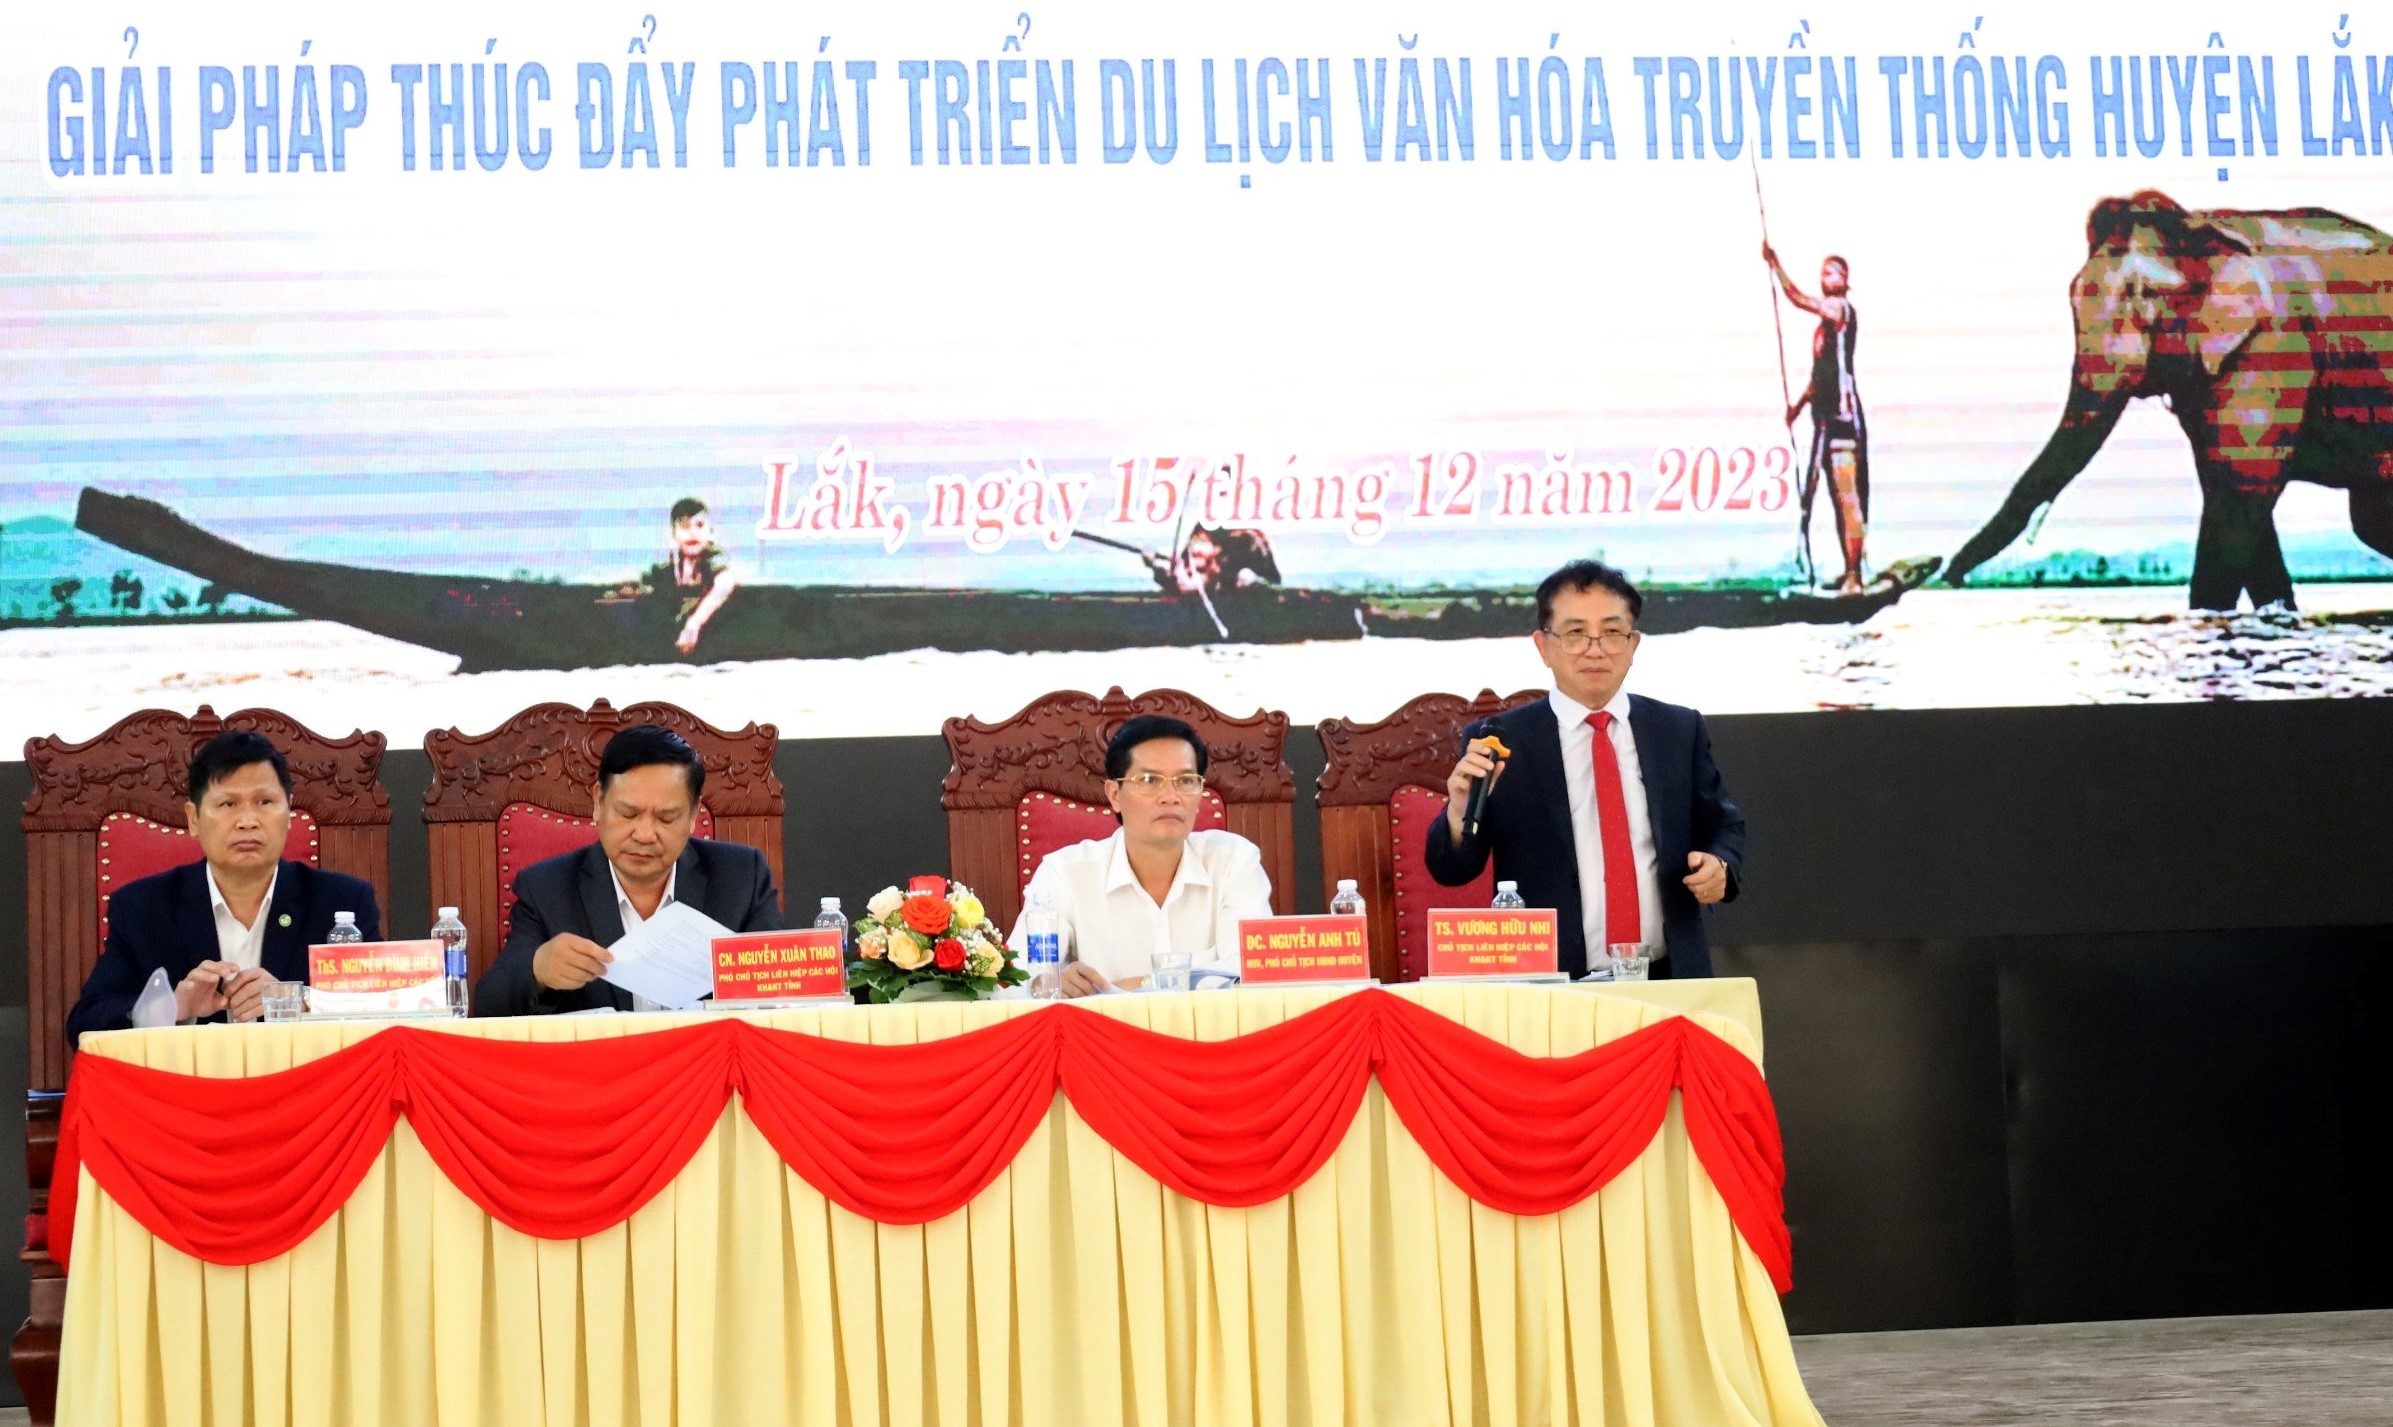 Ông Vương Hữu Nhi – Chủ tịch Liên hiệp các Hội Khoa học Kỹ thuật tỉnh Đắk Lắk phát biểu tại hội thảo.